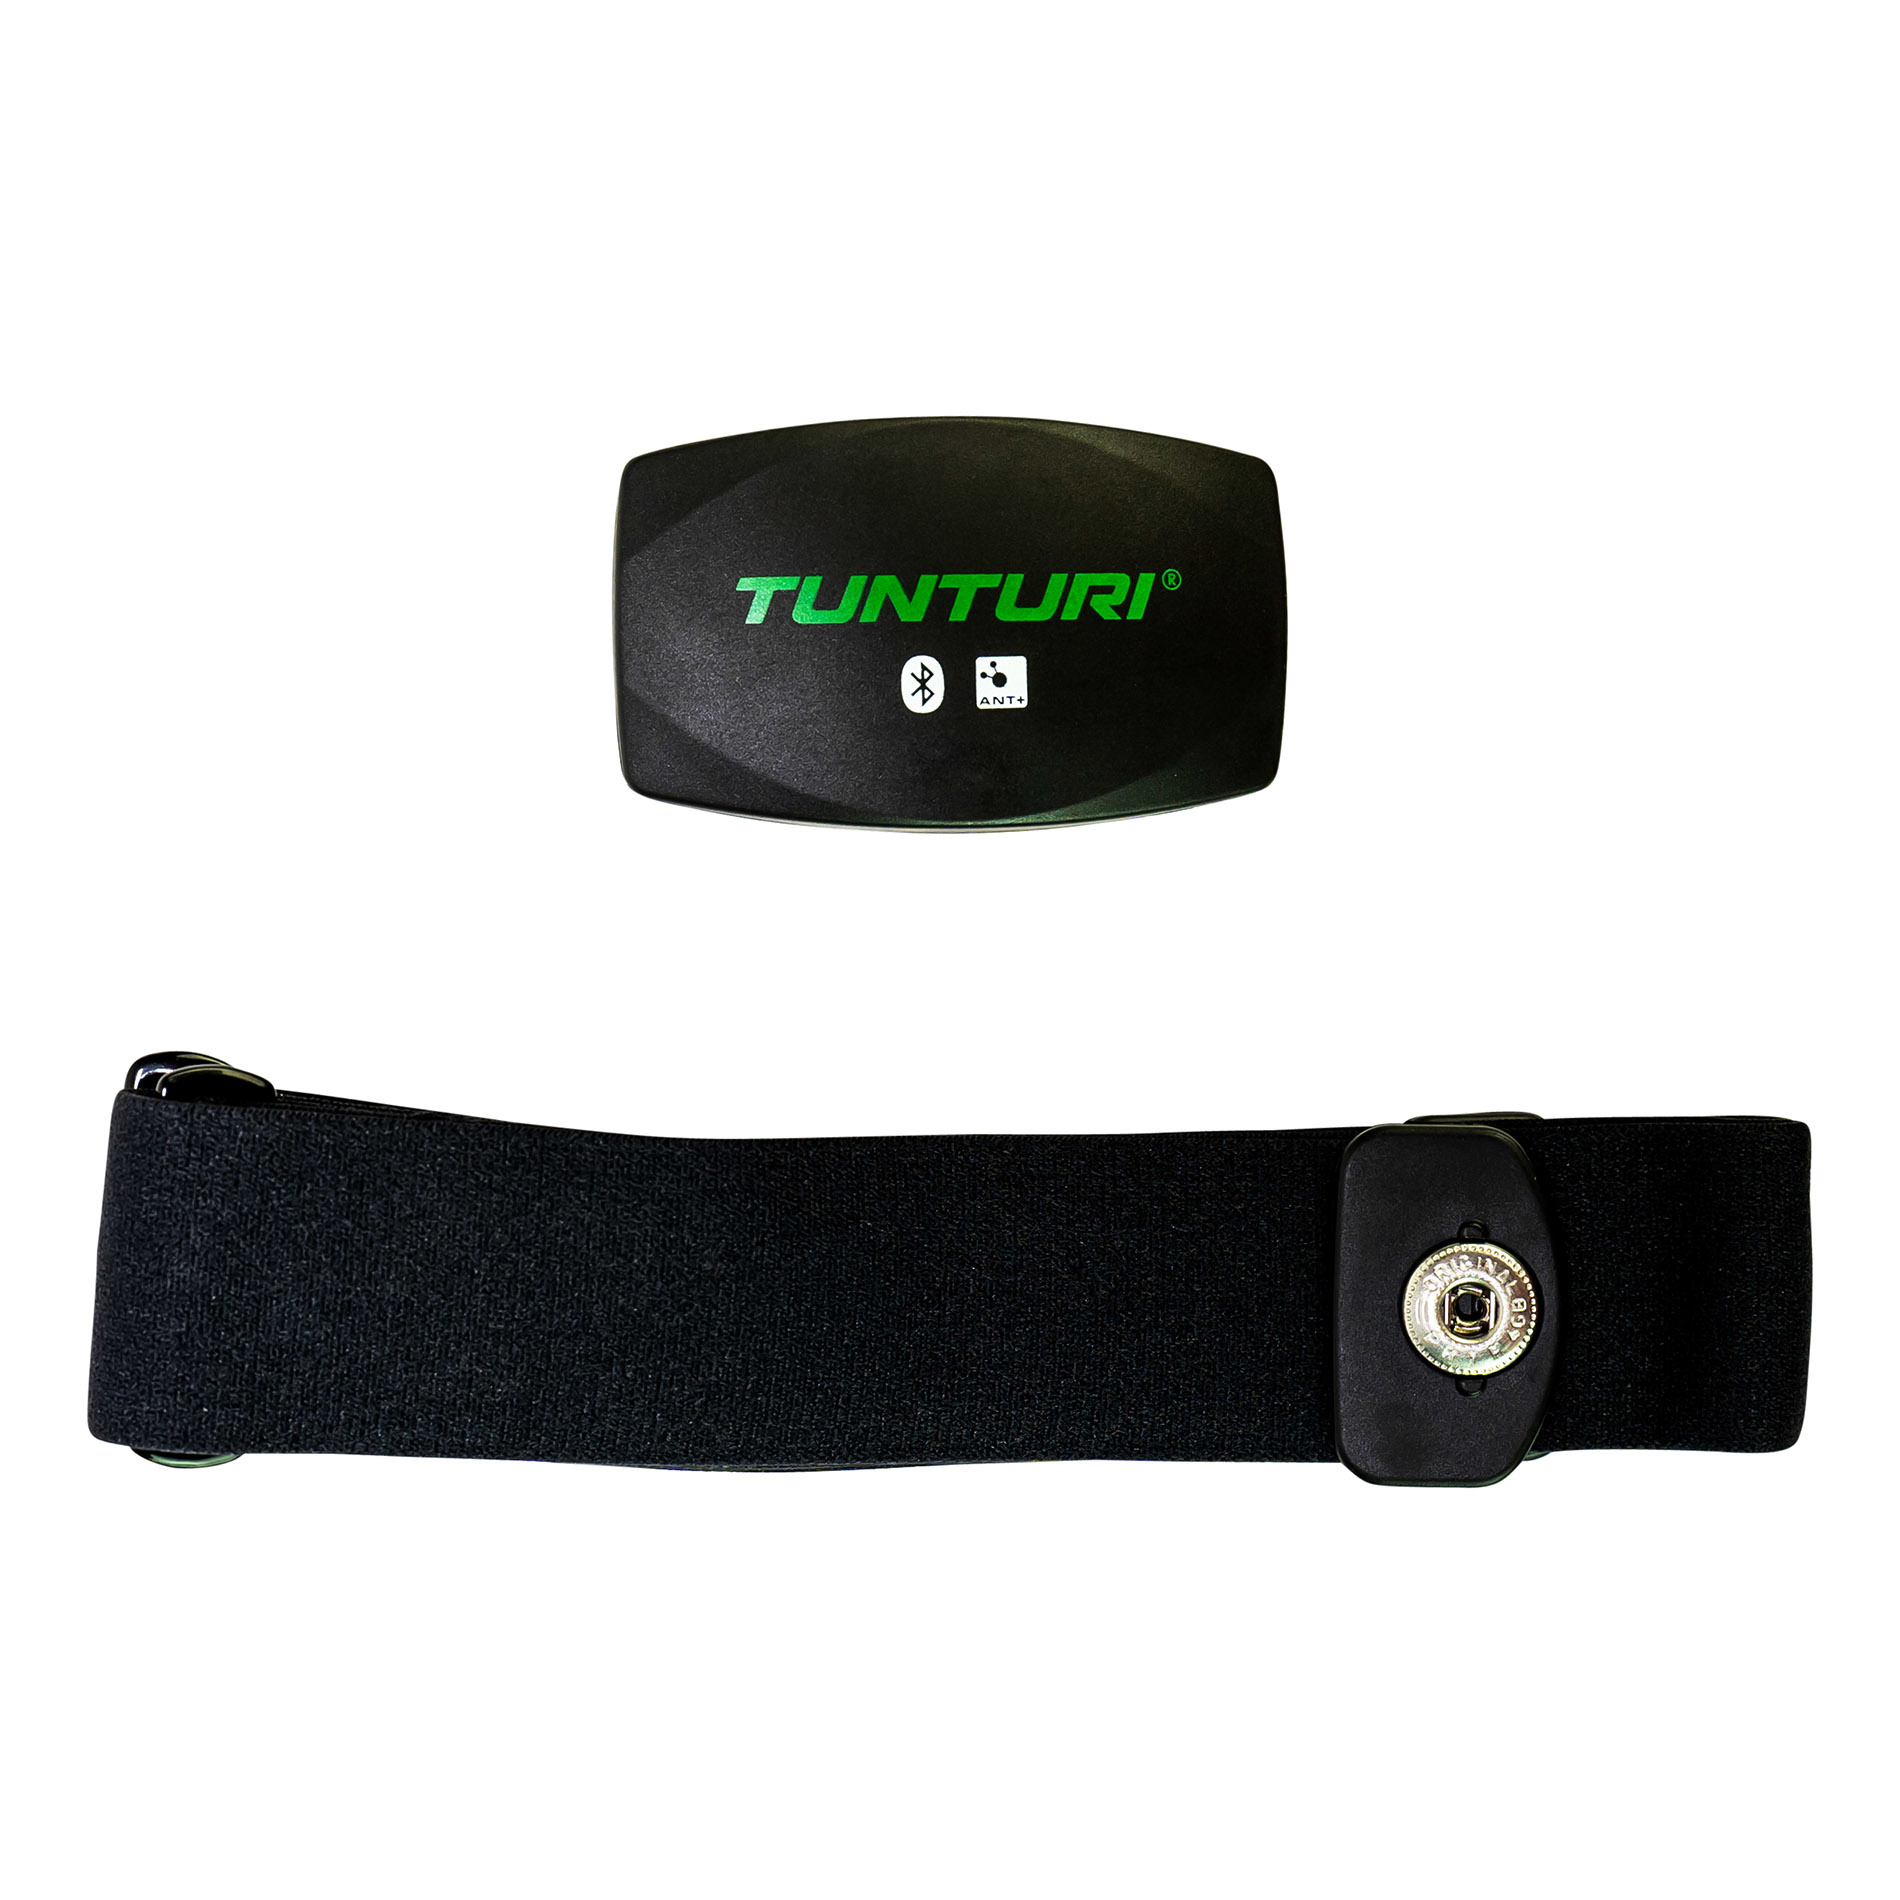 Danser Verstikken Vervreemding Digitale hartslagband bluetooth / hartslagmeter ant+ - Tunturi Fitness